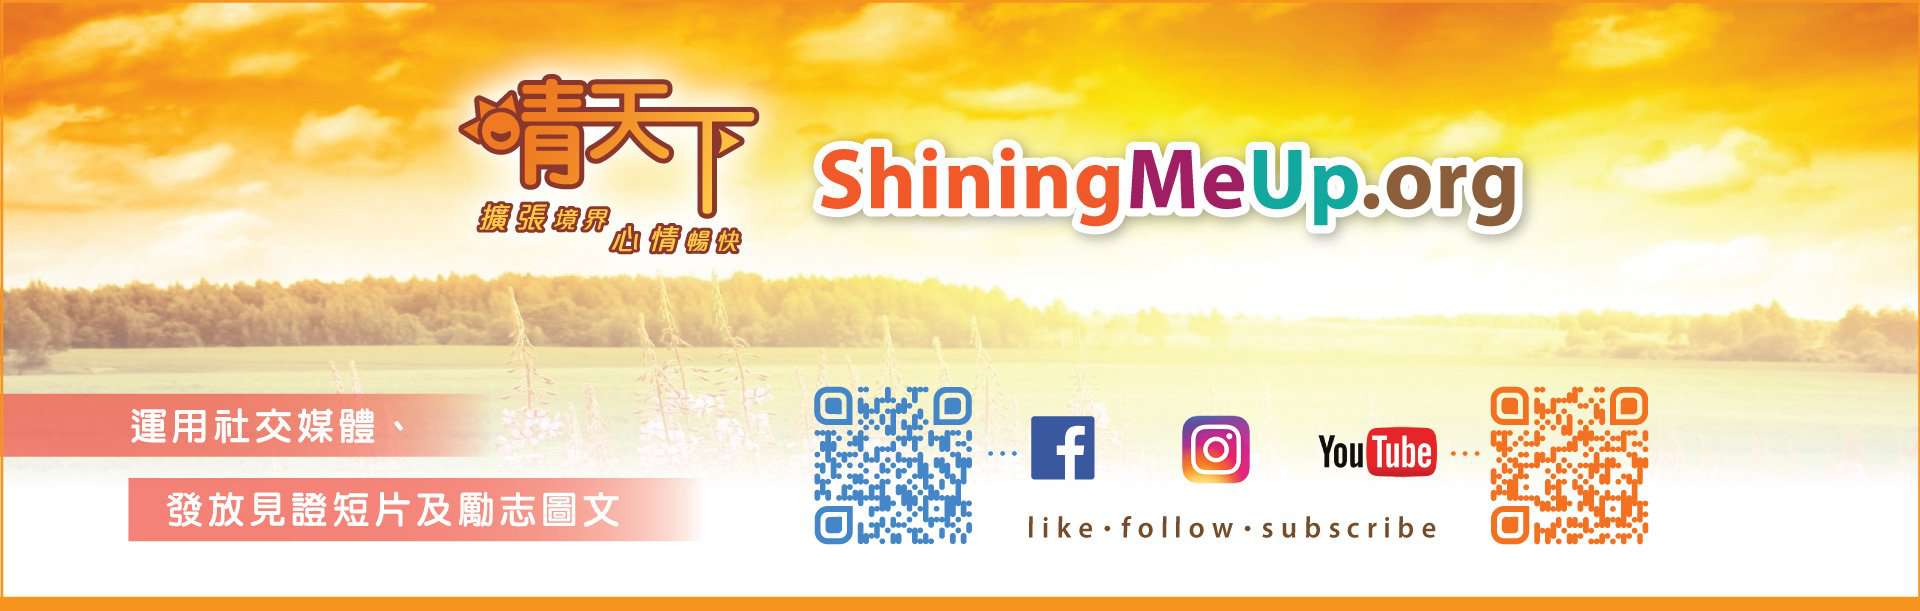 晴天下 ShiningMeUp.org - 擴張境界 心情暢快 - 運用社交媒體、發放見證短片及勵志圖文